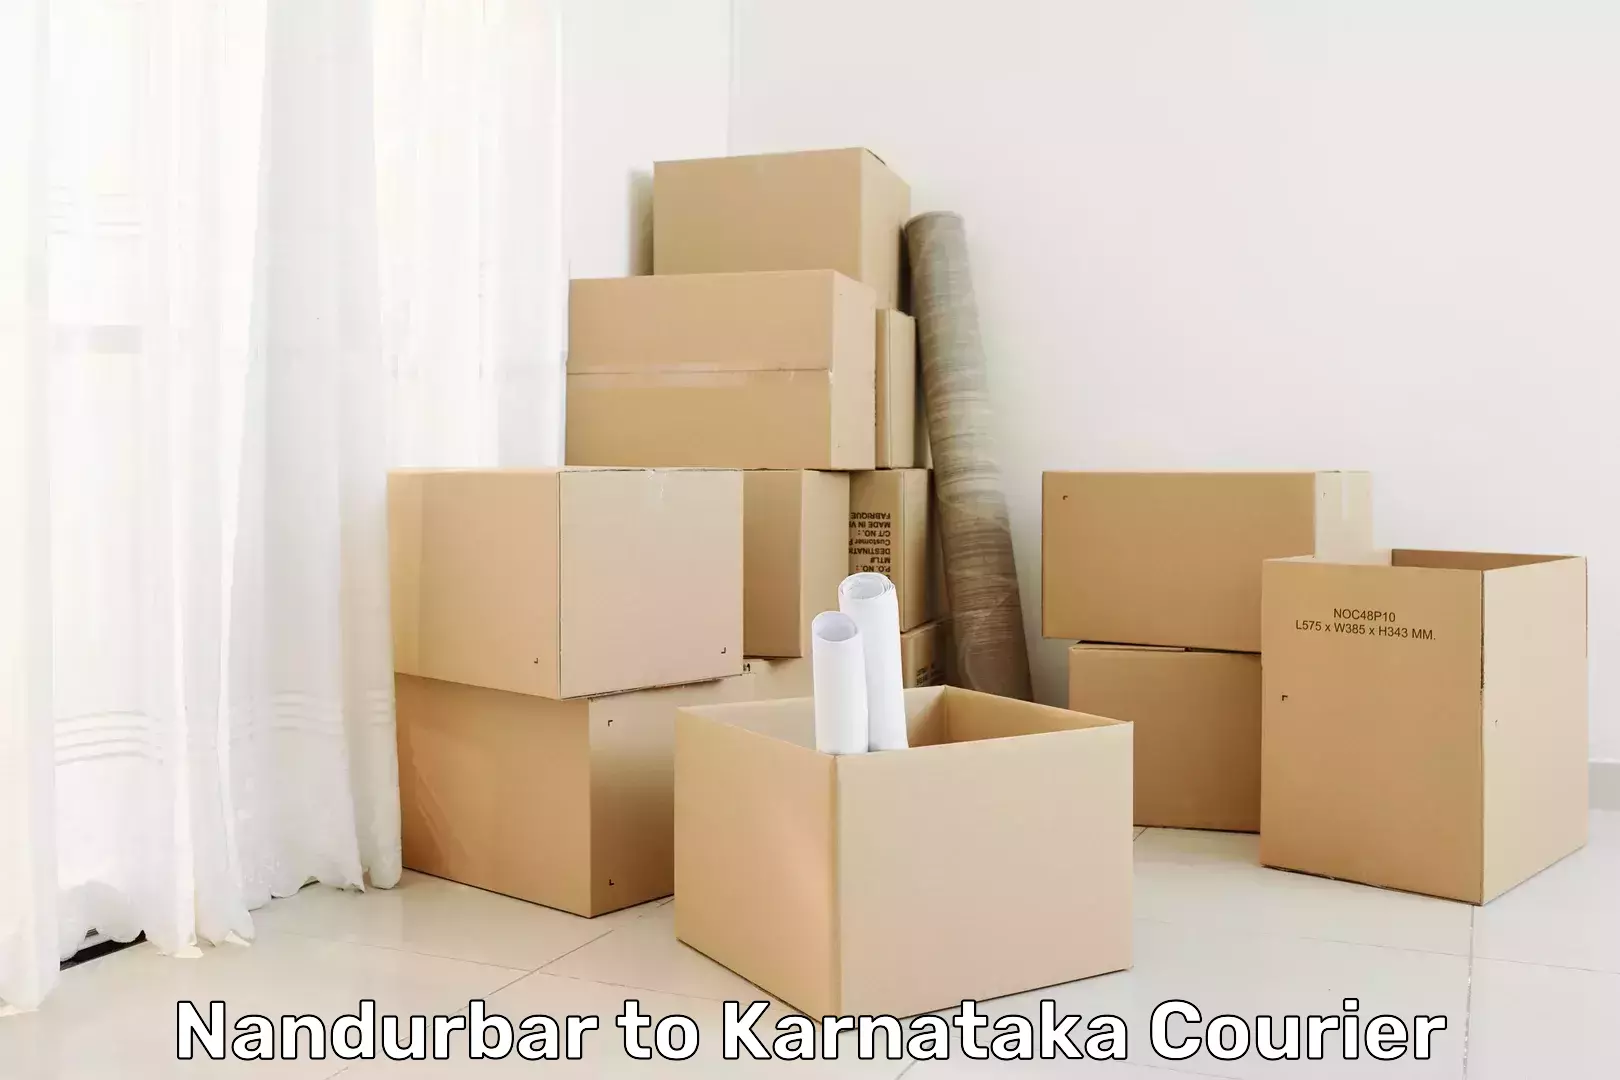 Global shipping solutions Nandurbar to Bangalore